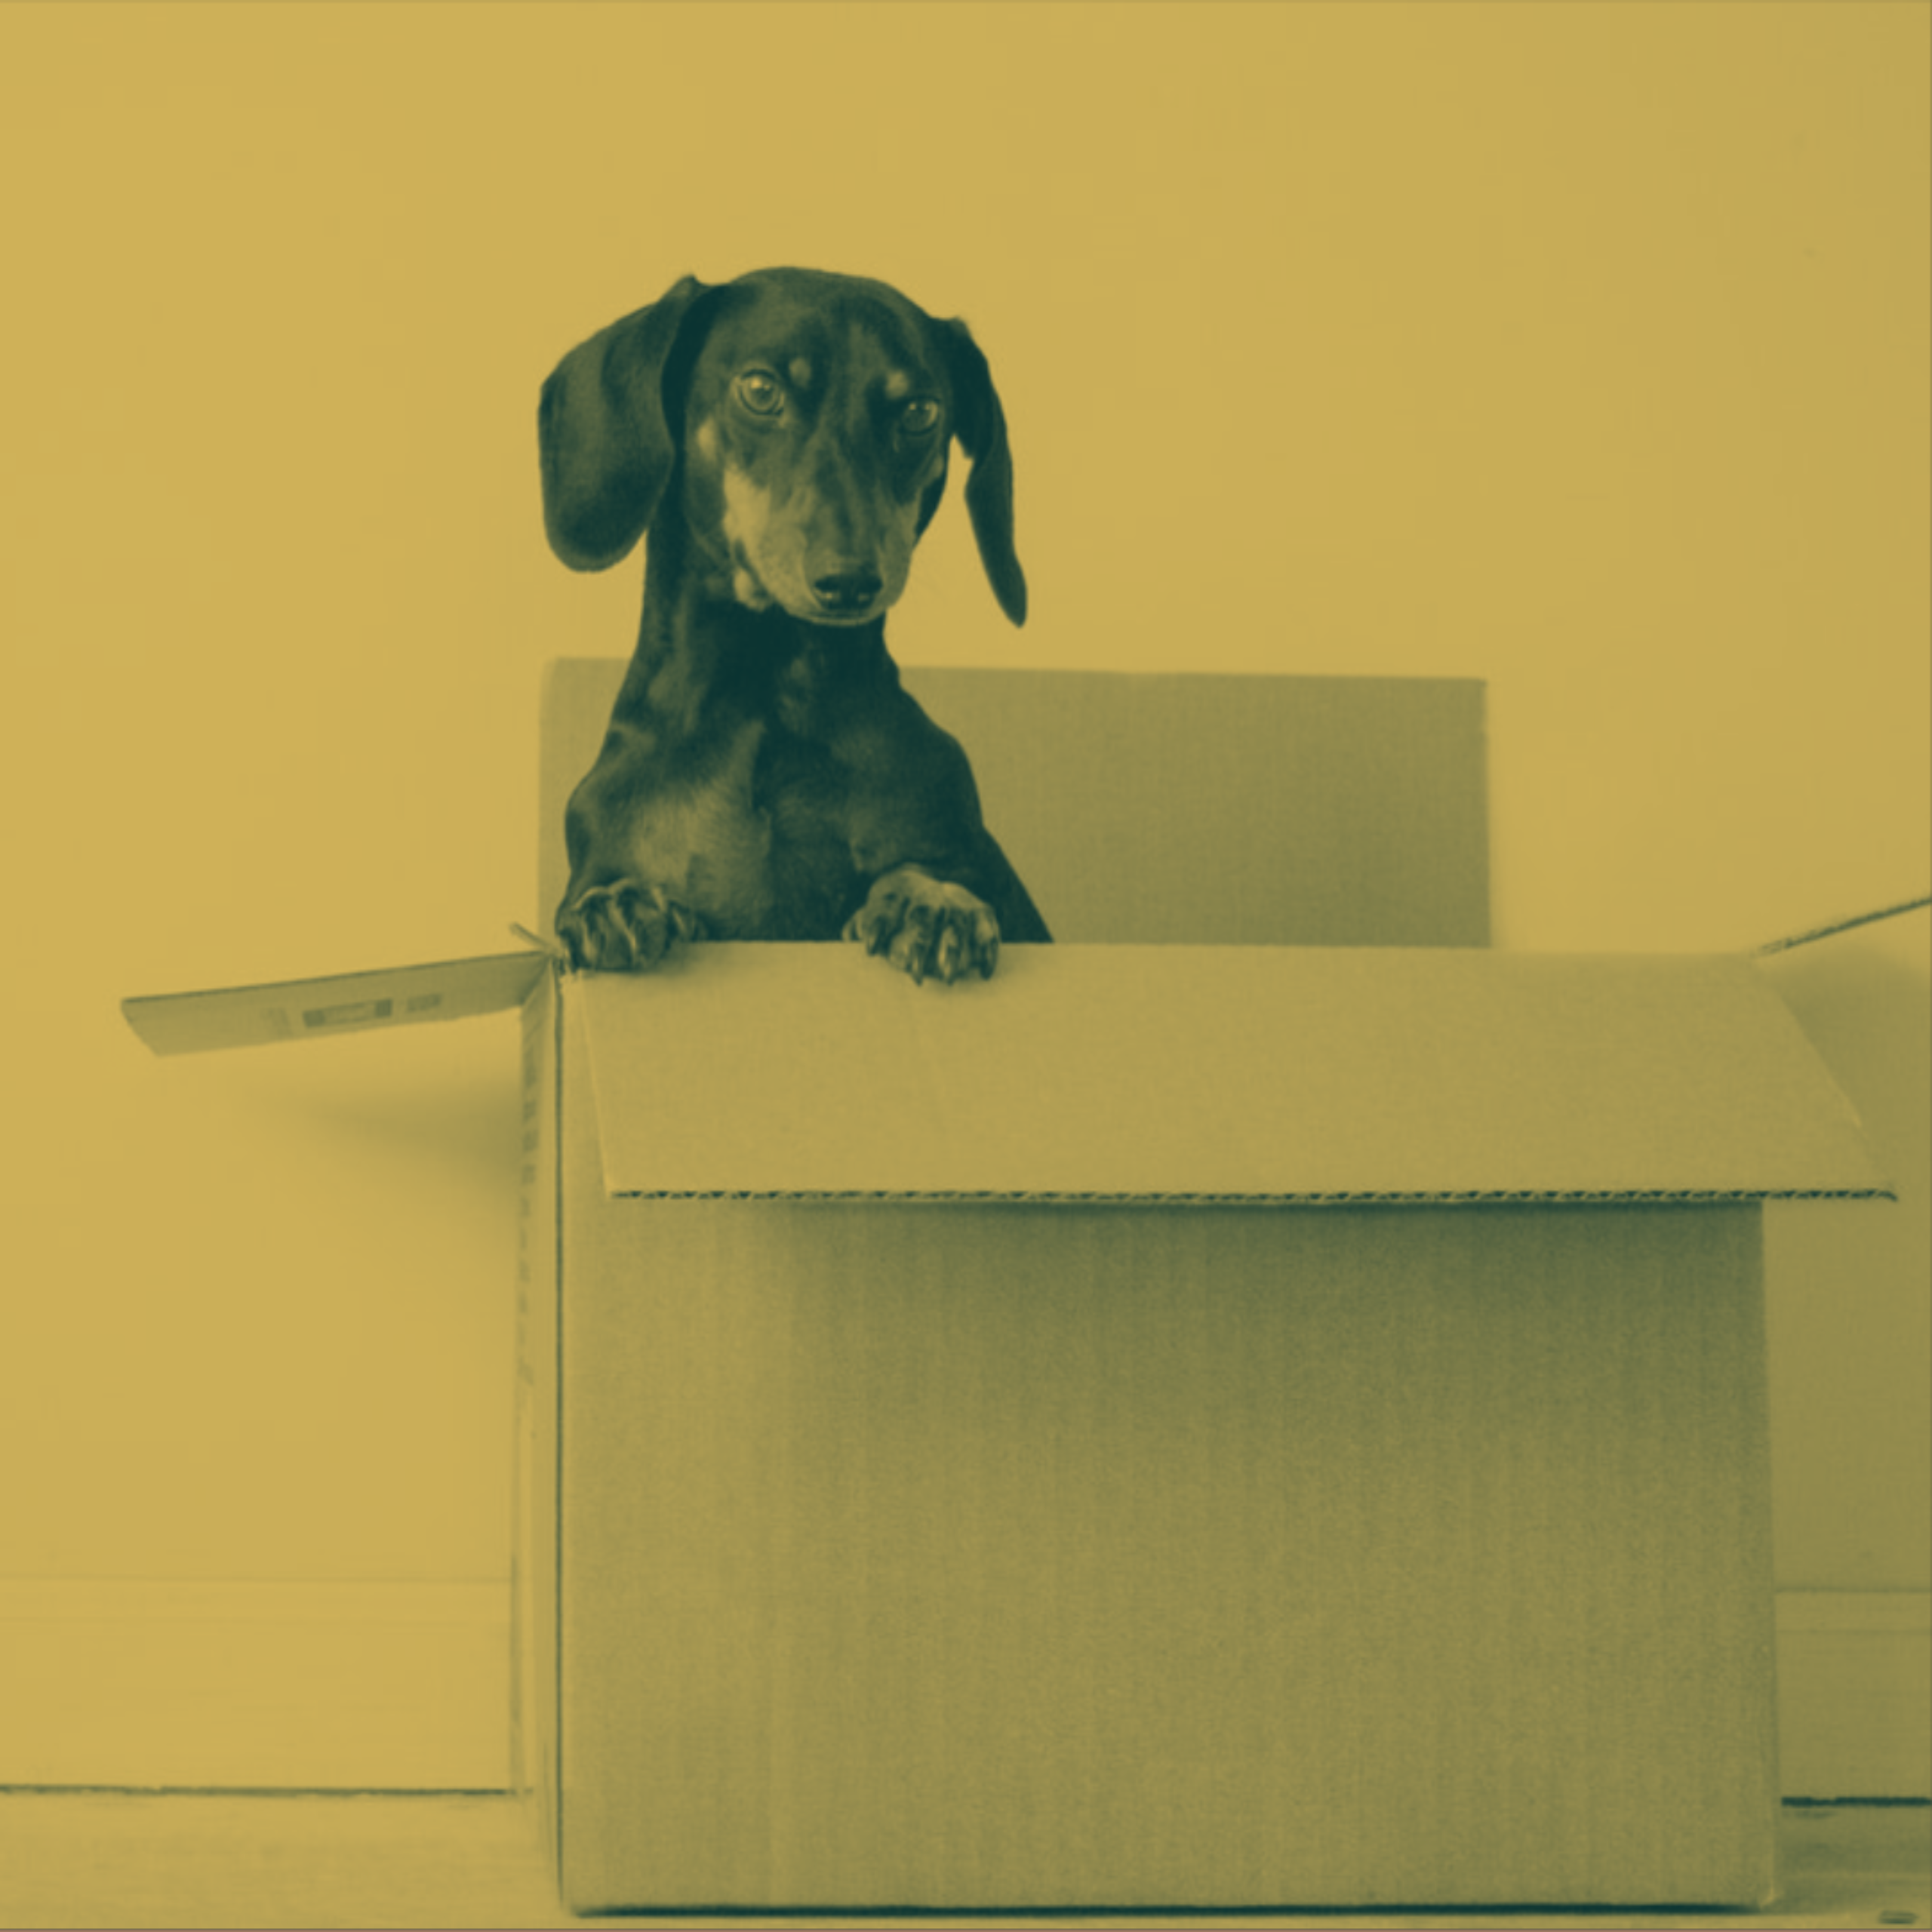 A dog in carton box